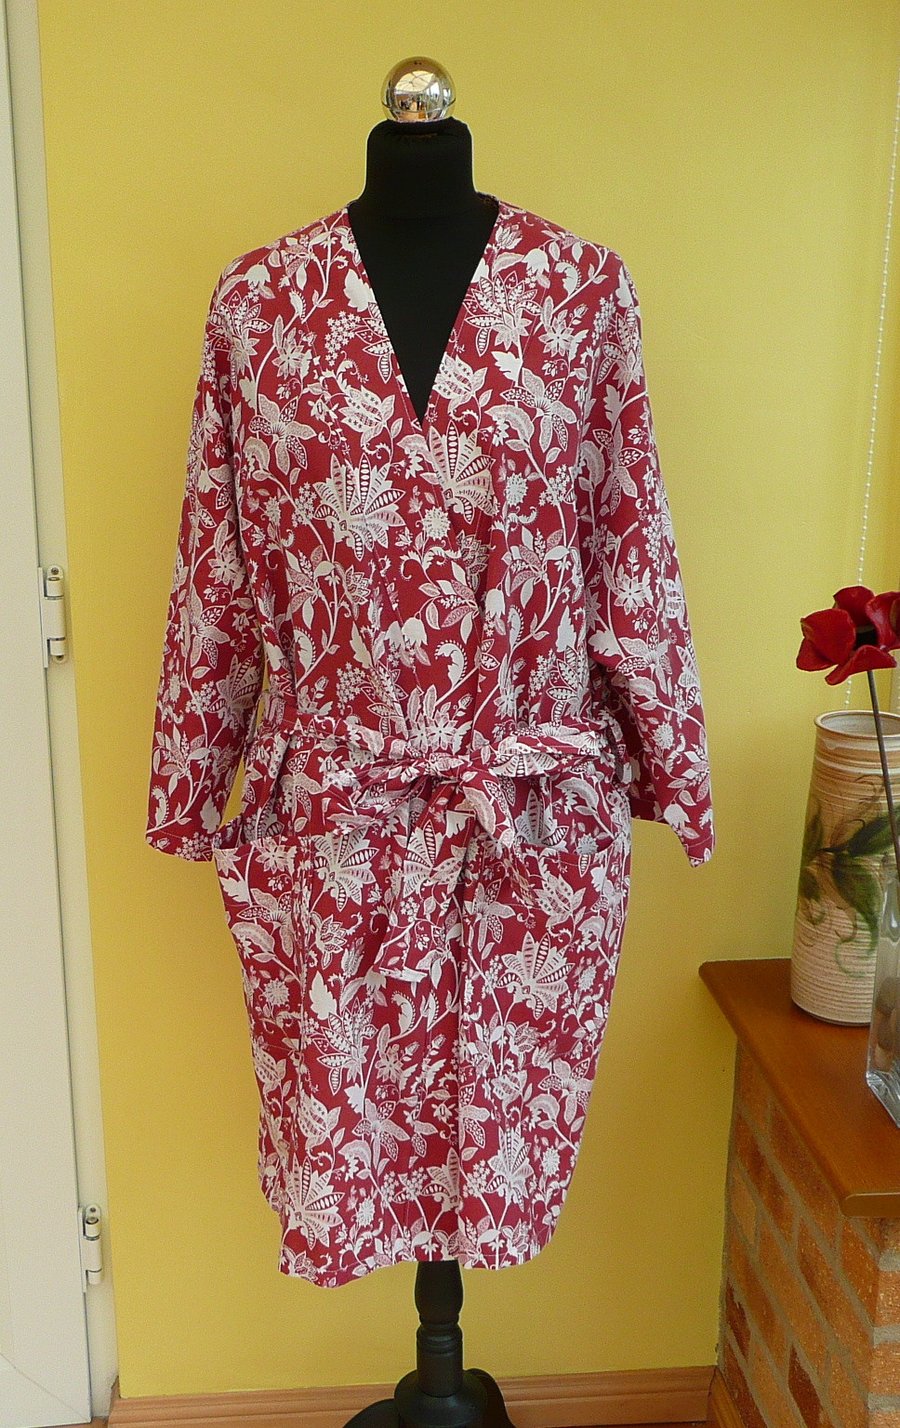 Kimono dressing gown terra cotta white floral bath robe